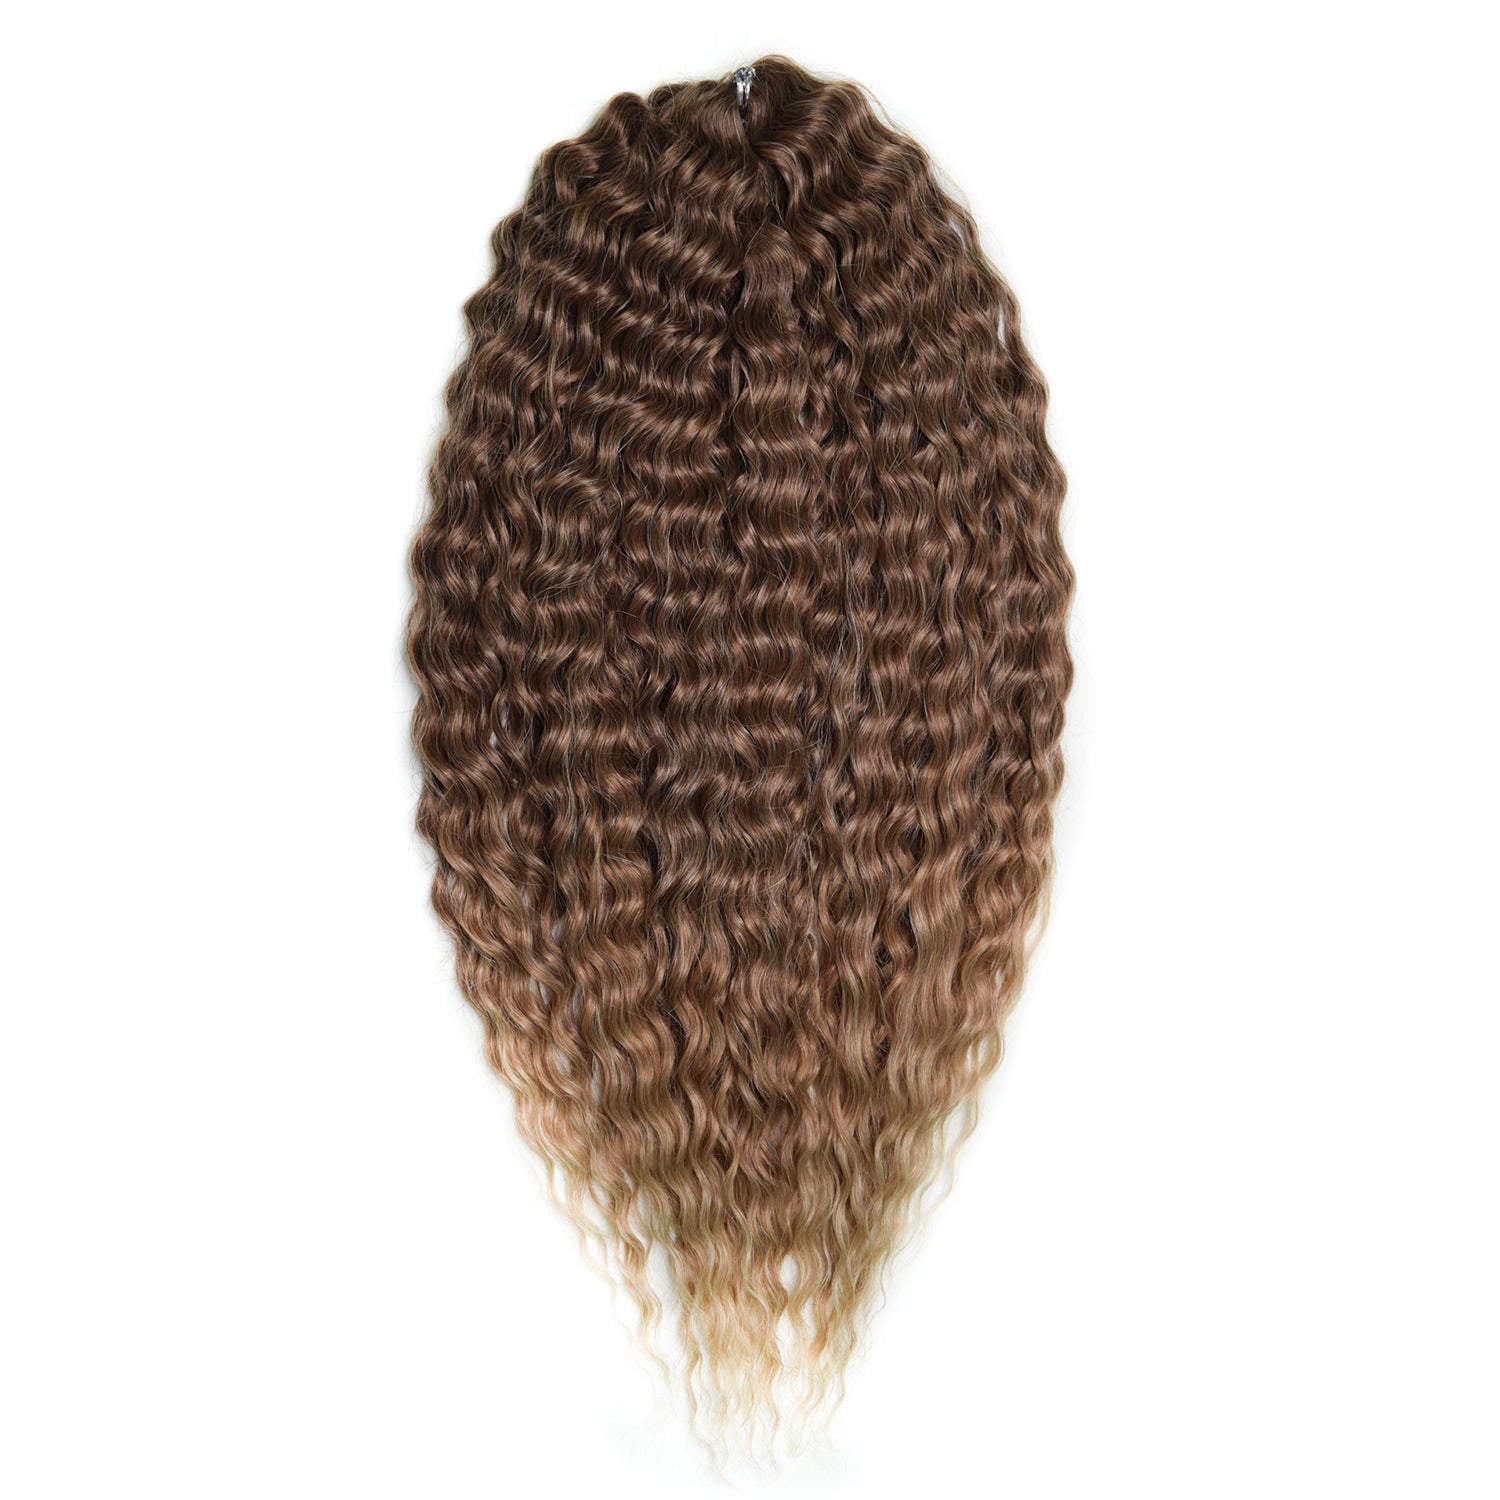 Афрокудри для плетения волос Ariel цвет 042 светлый-каштан длина 55см вес 300г